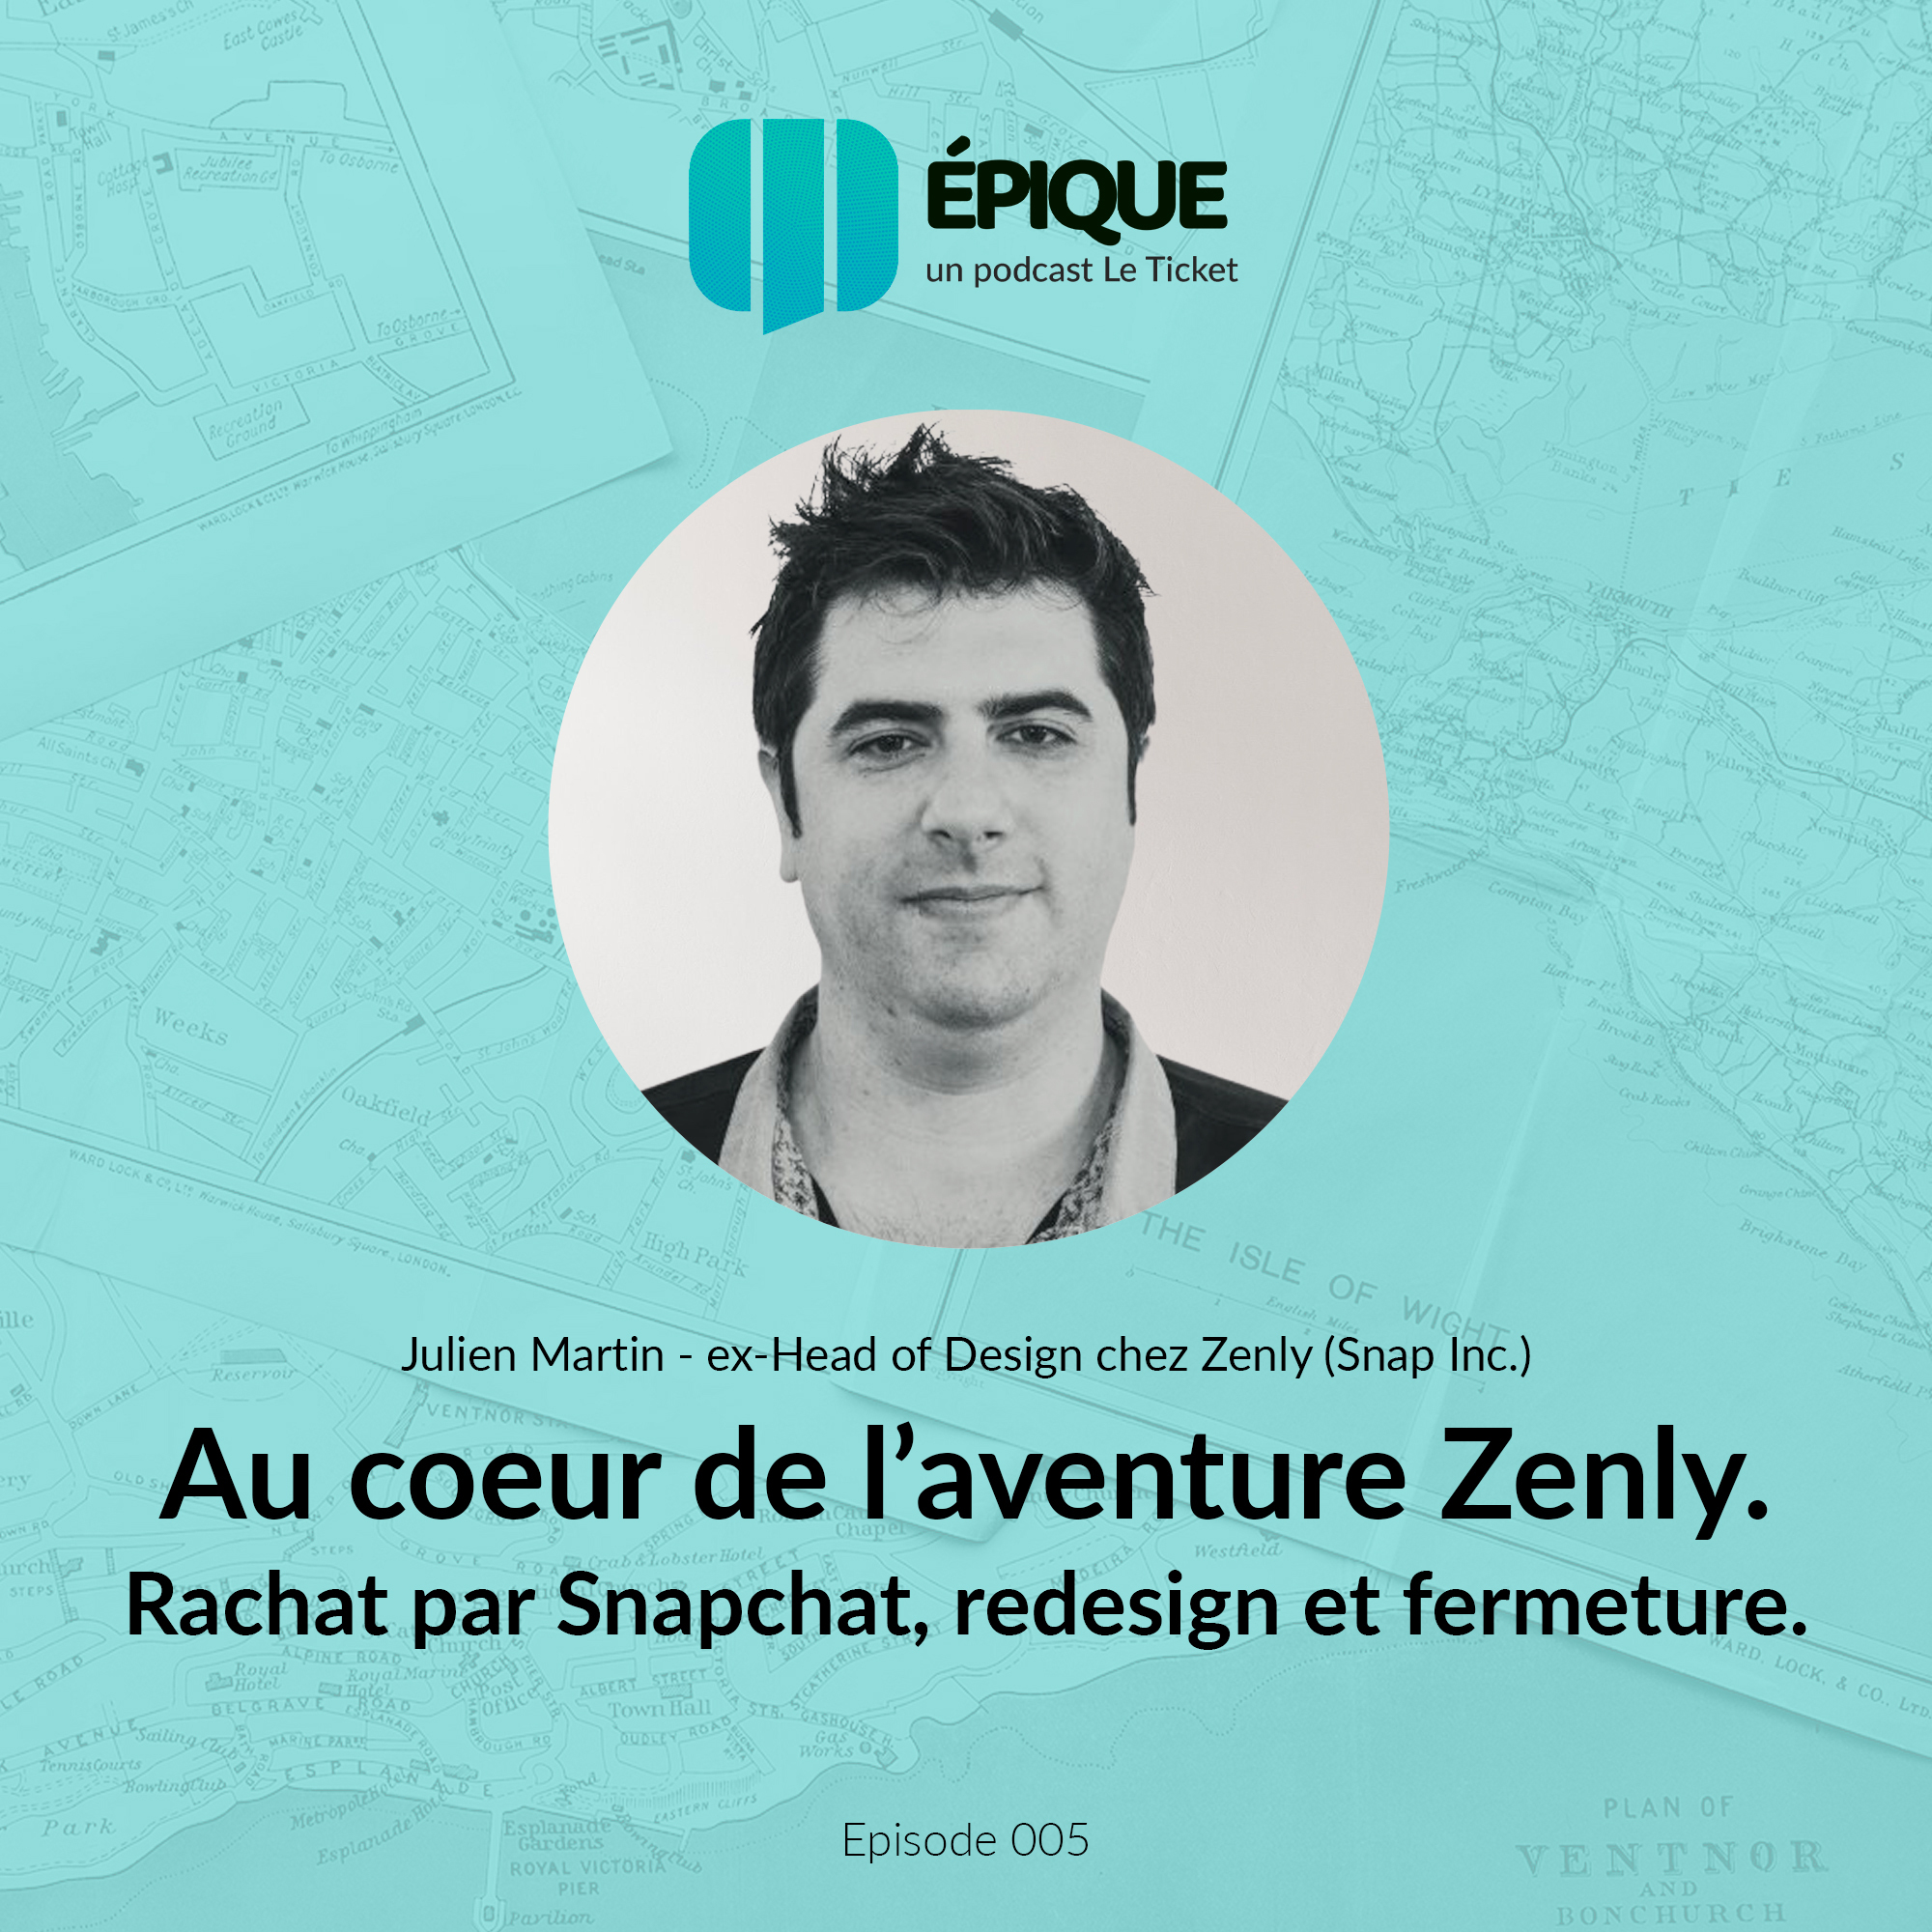 Julien Martin Zenly